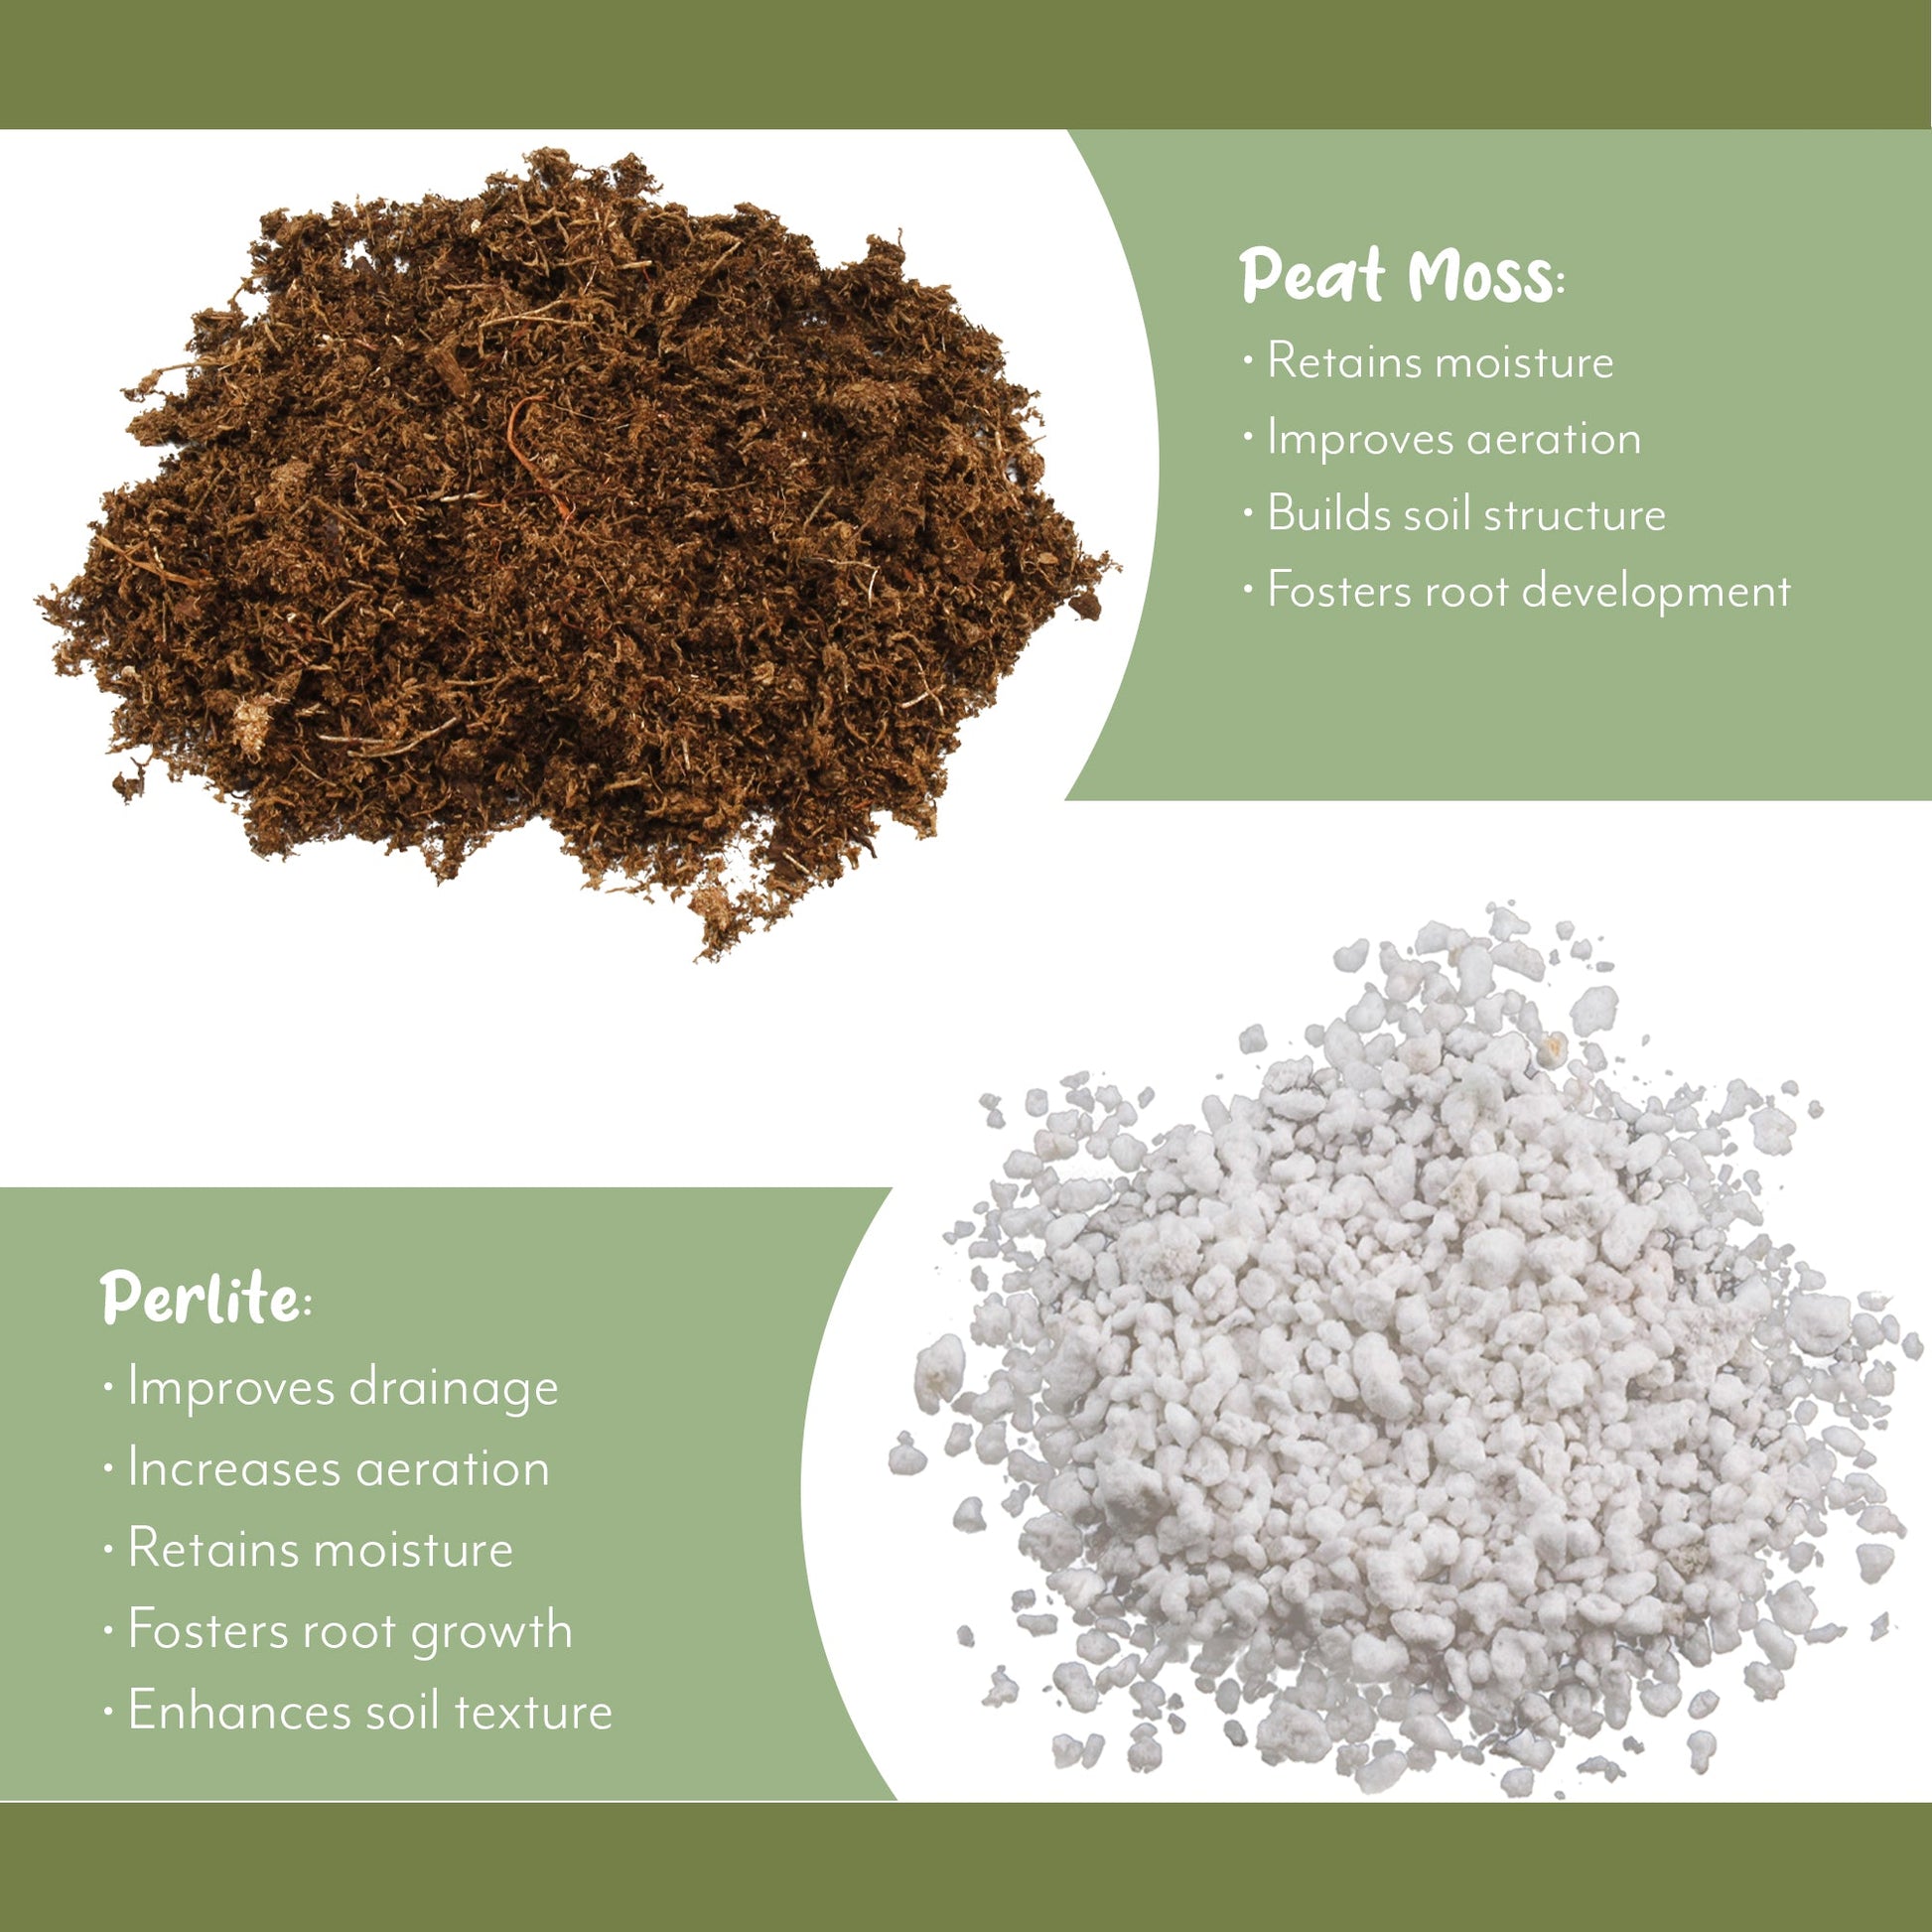 Philodendron Plant Potting Soil Mix (8 Quarts) - SSKIT081